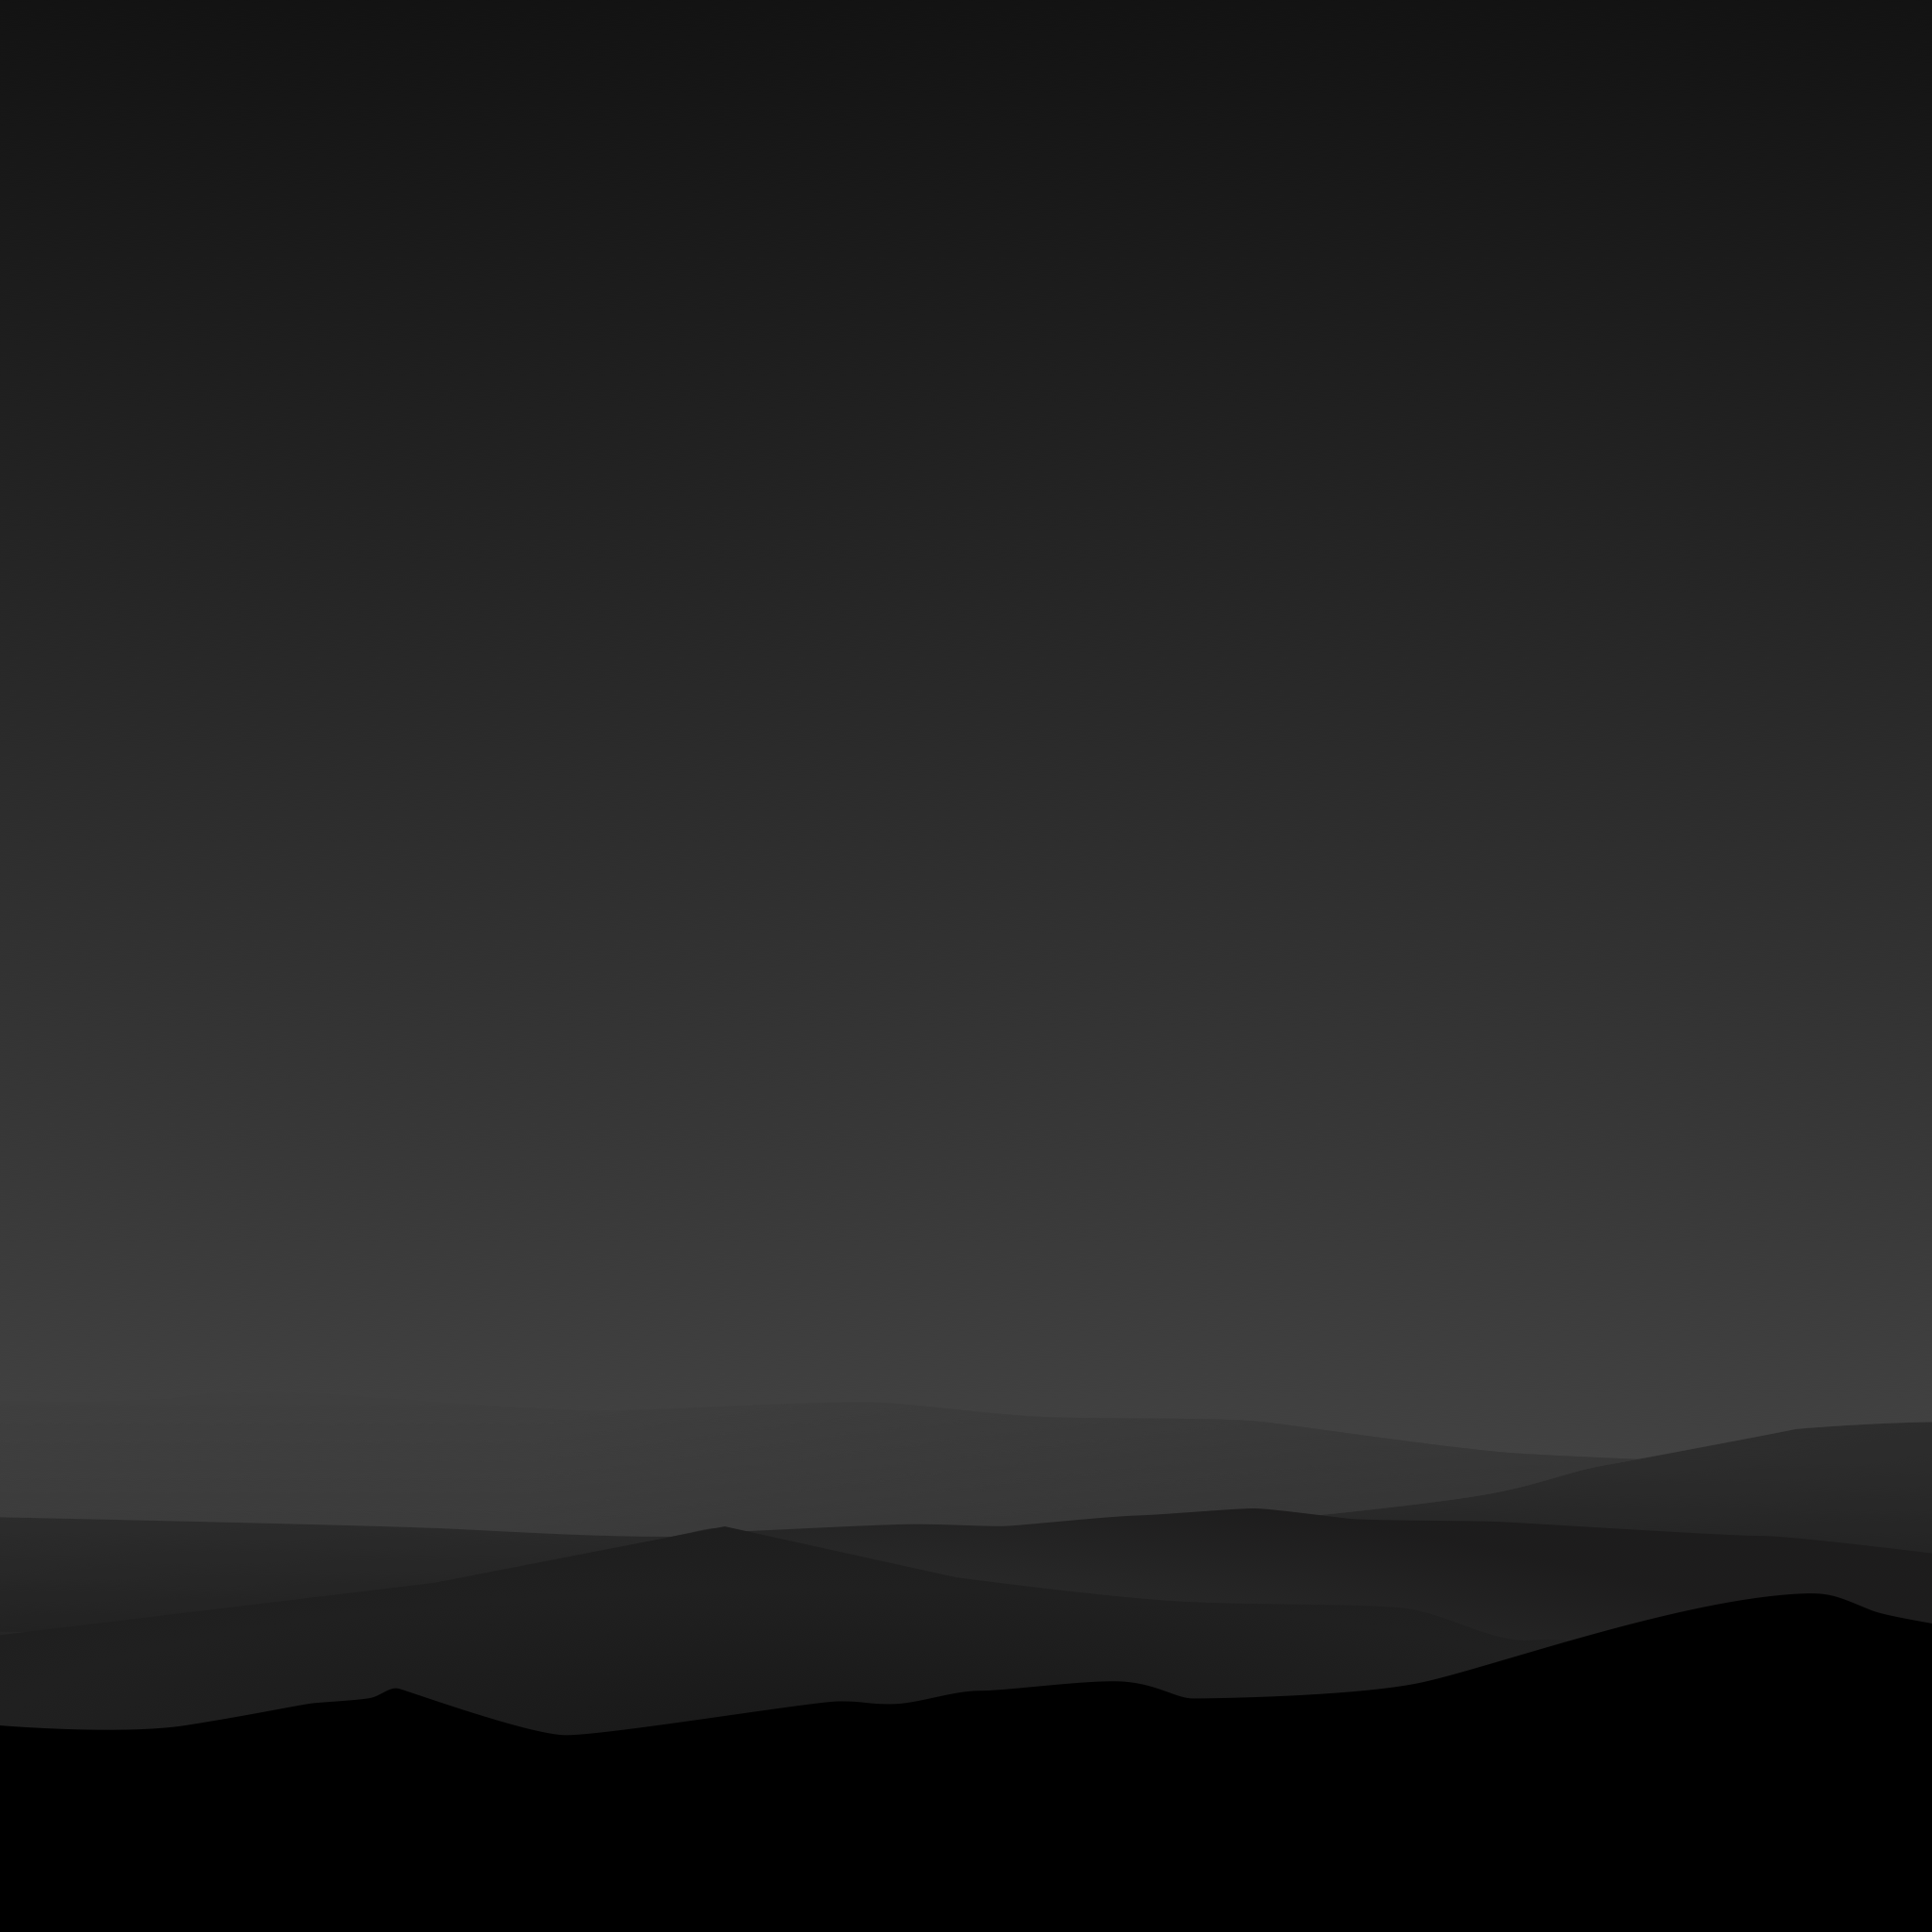 2048x2048 Hình nền của tuần: những ngọn núi tối giản tiếp tục